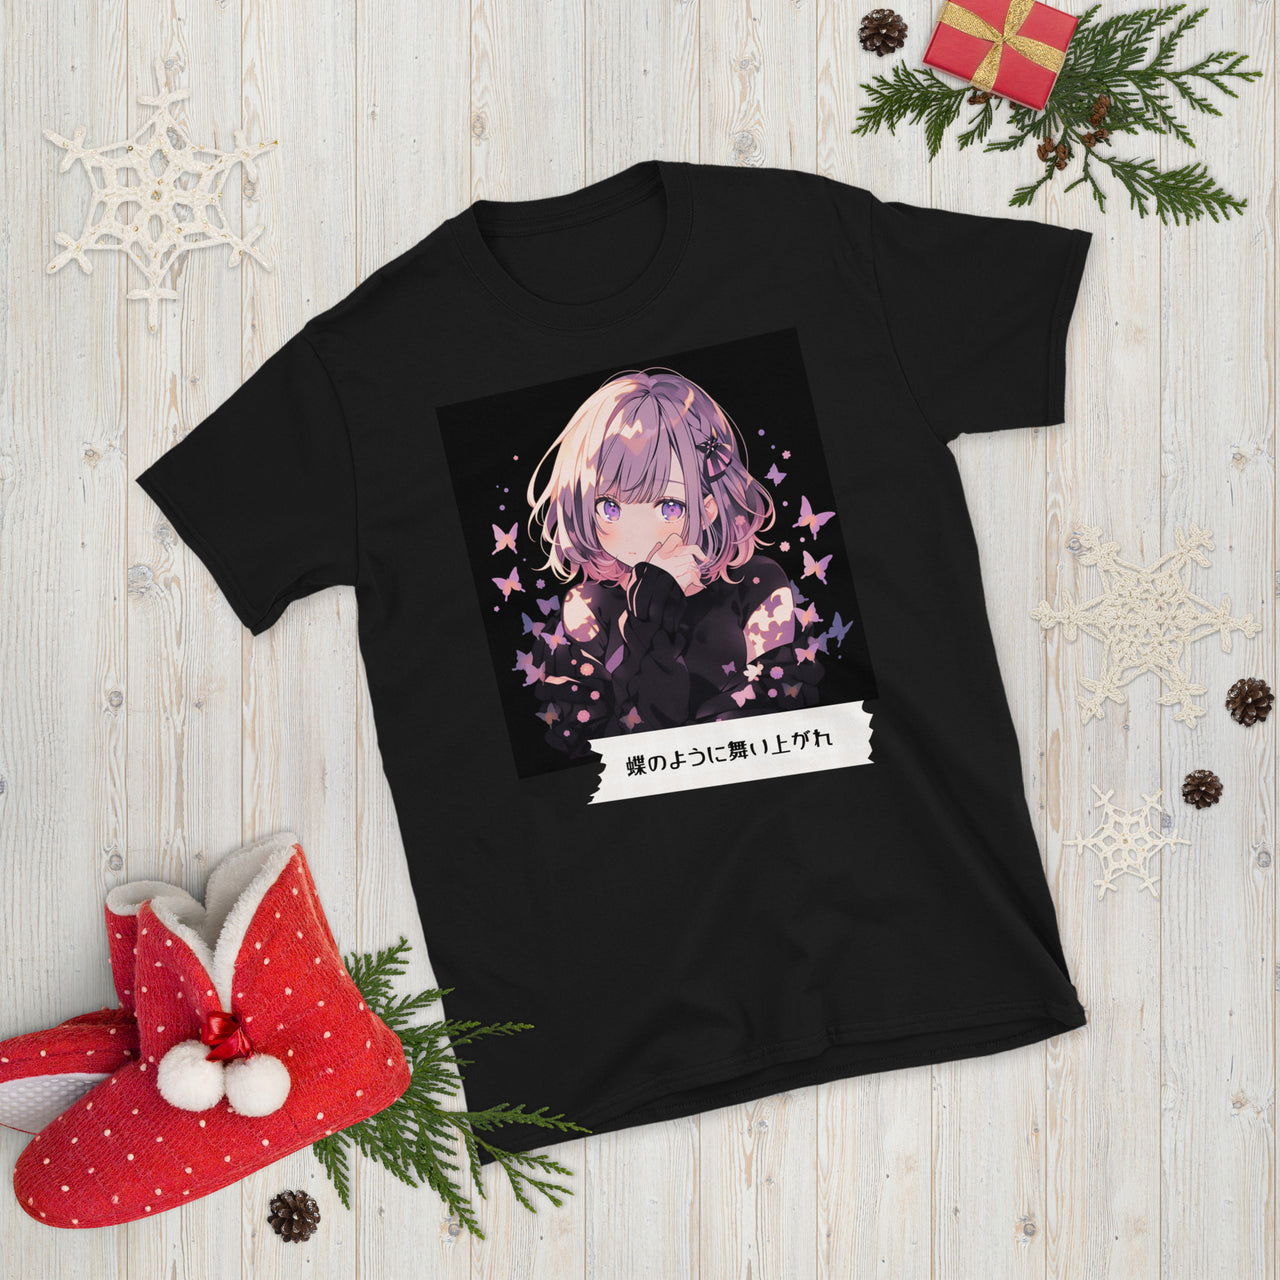 Cute Anime Girl and Butterflies T-Shirt